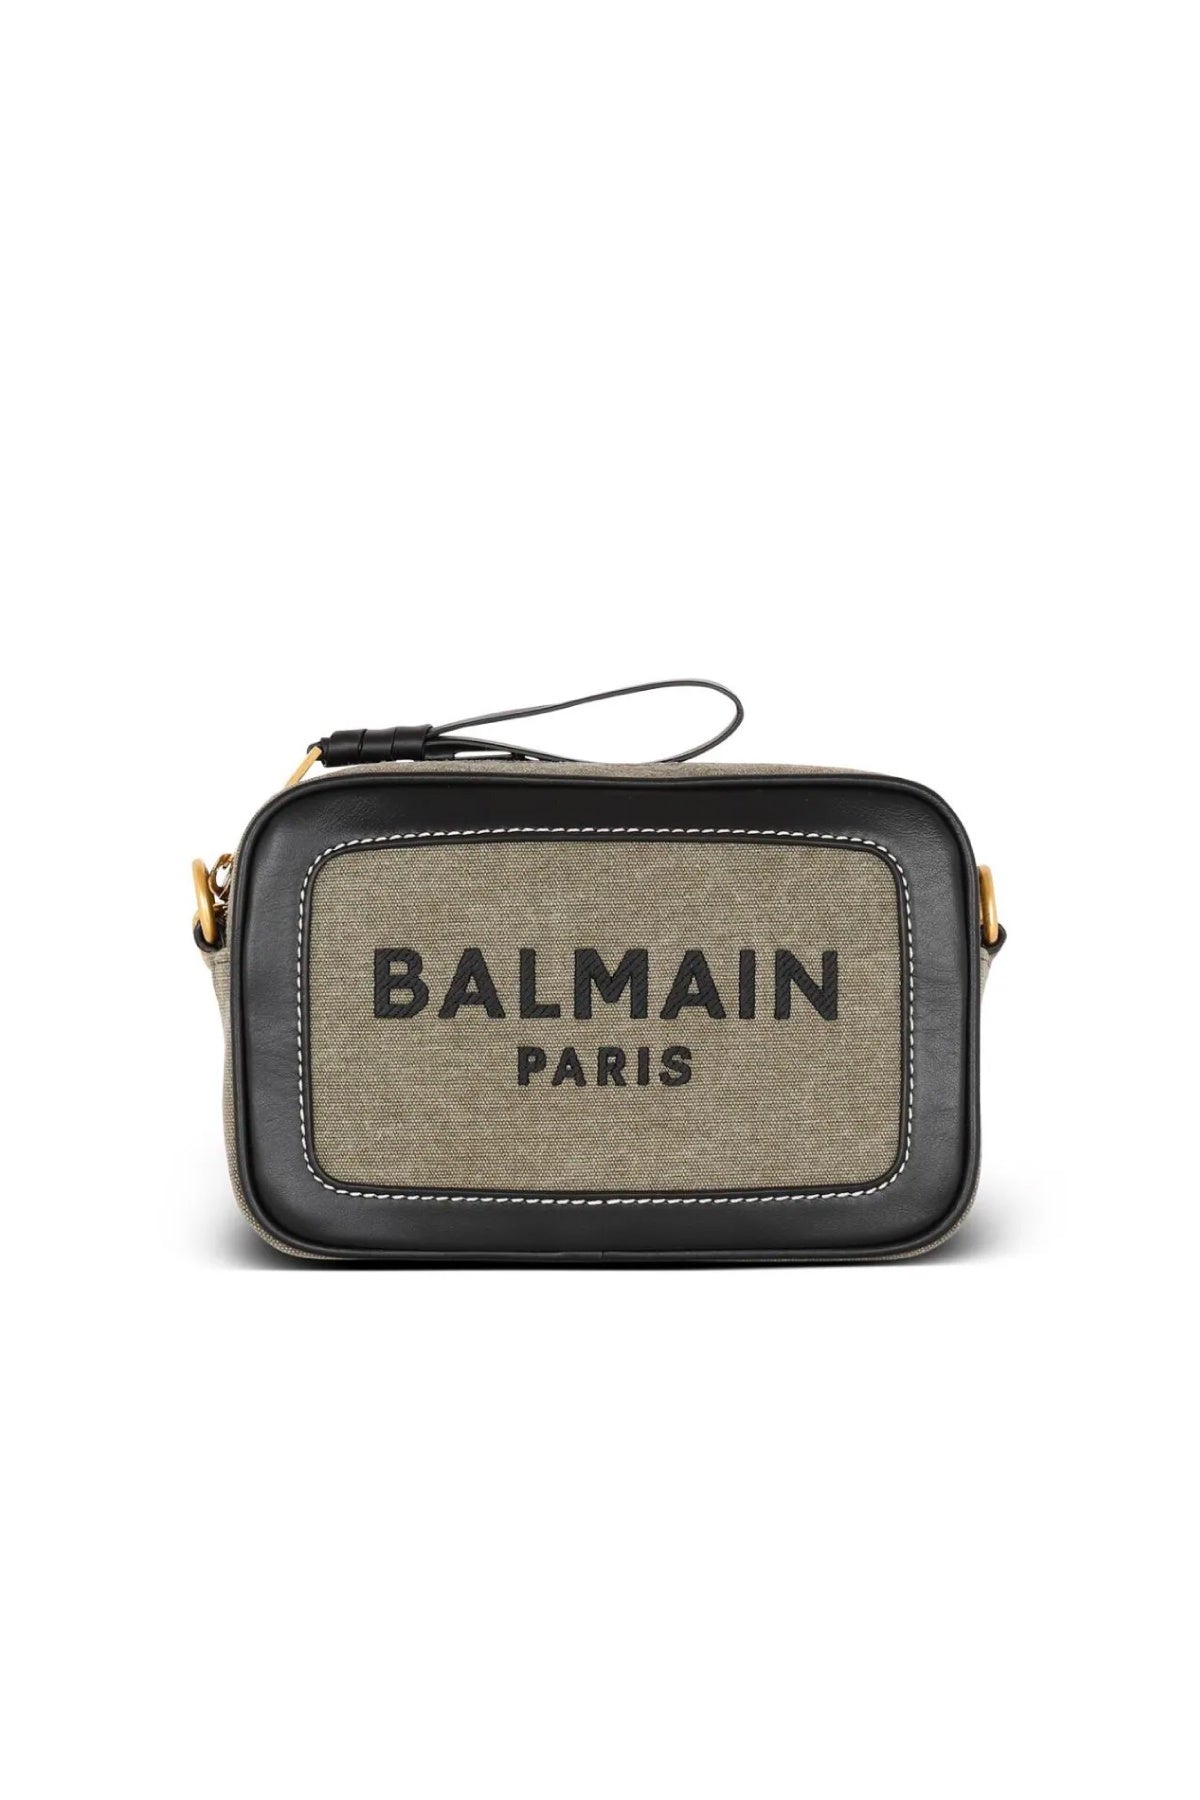 Balmain B-Army Camera Bag - Khaki/ Black